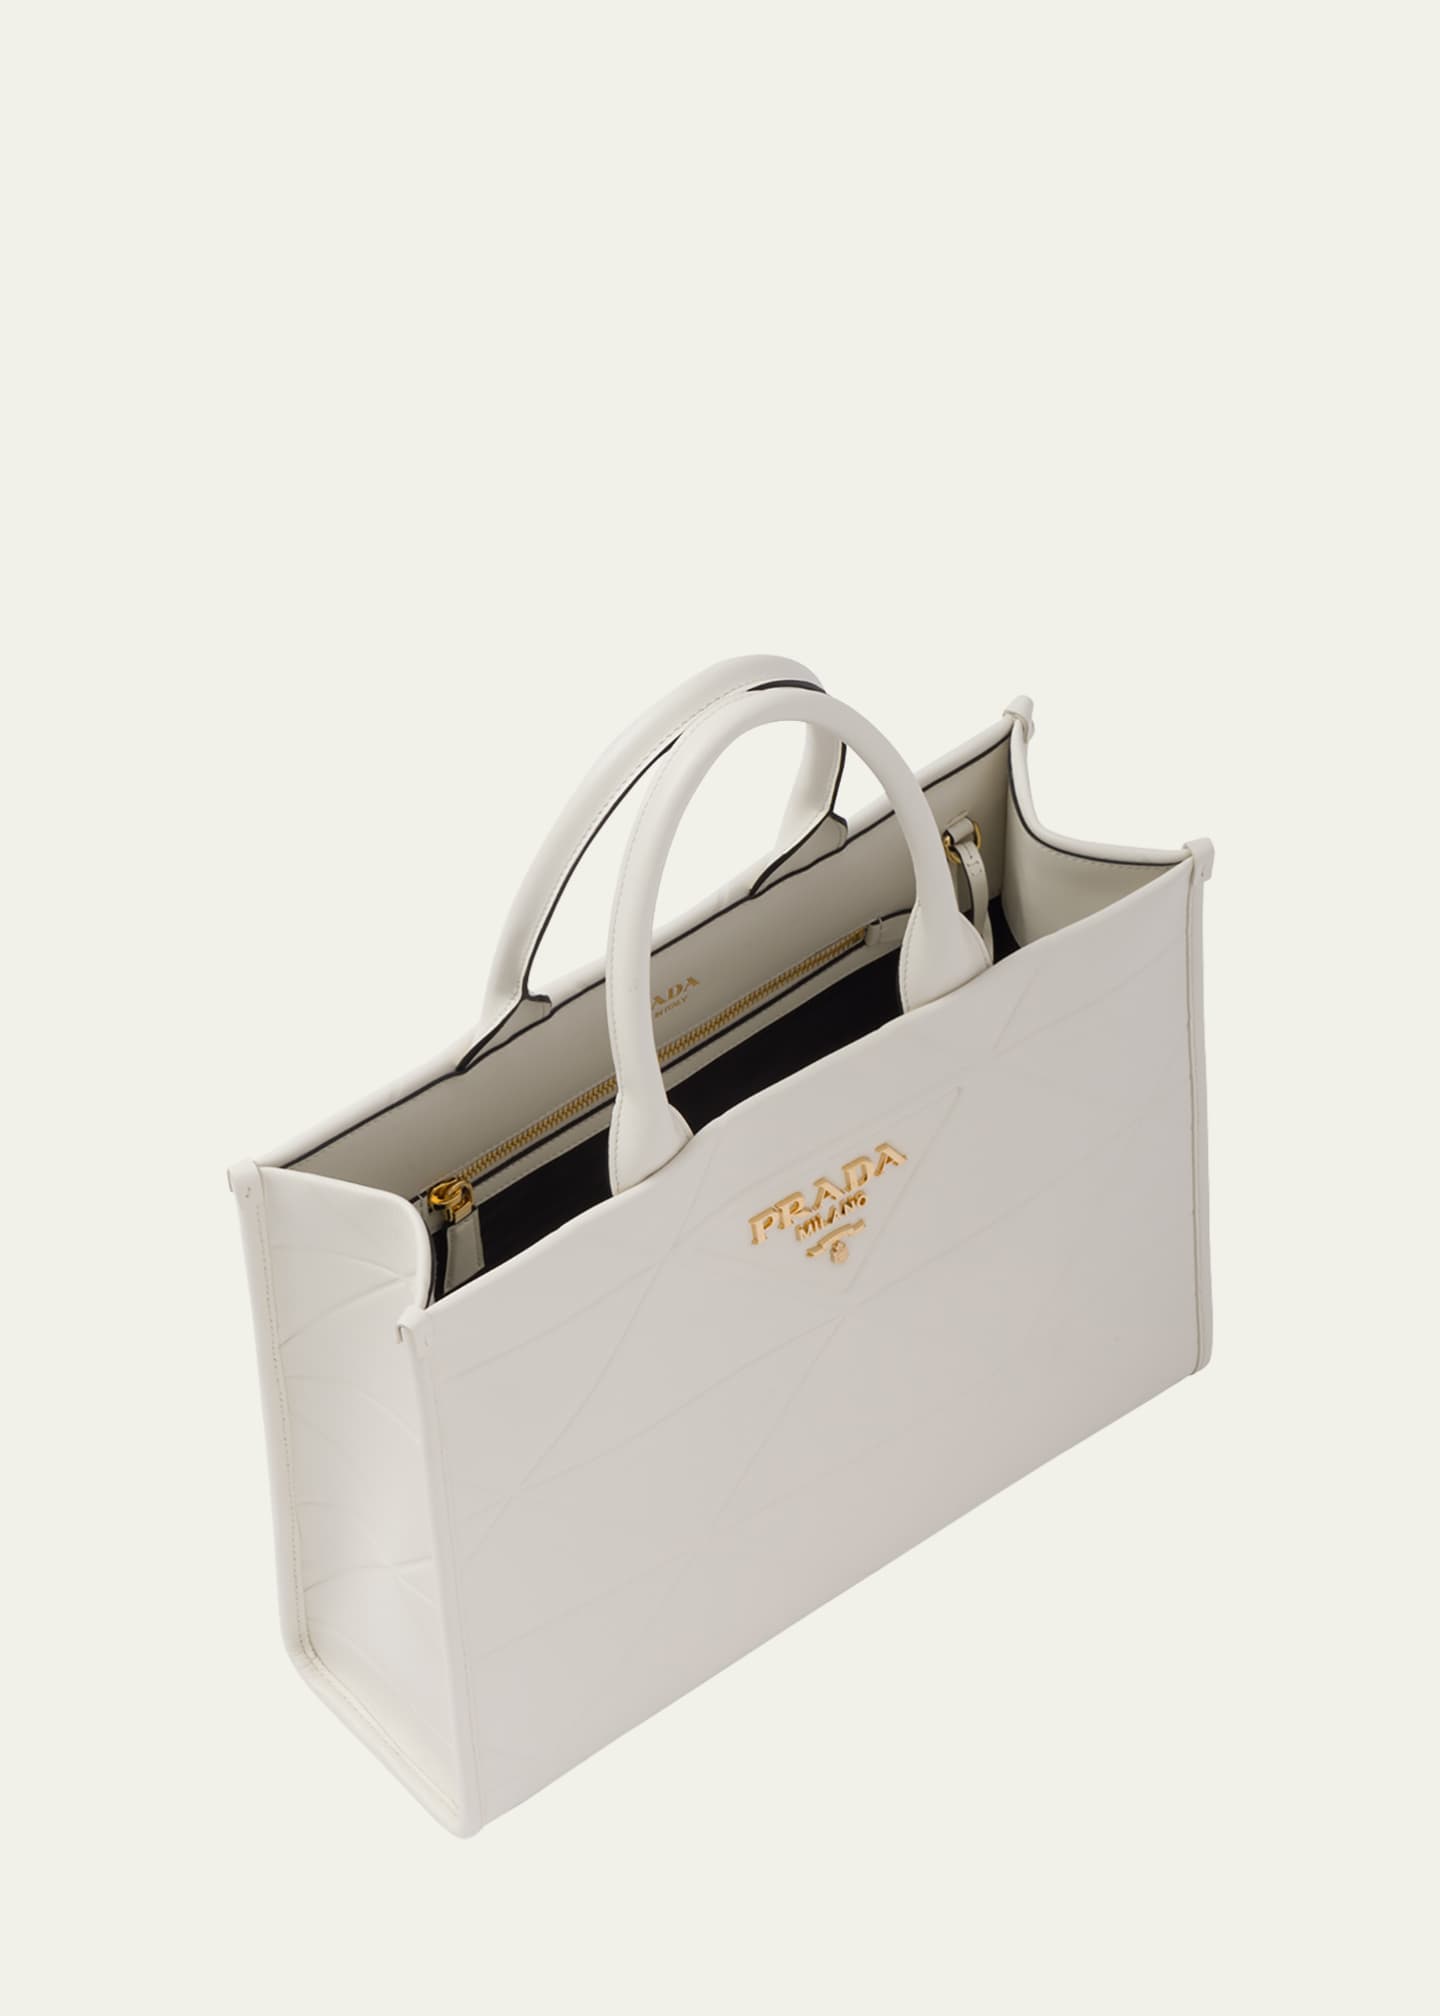 Prada White Leather Shopping Bag